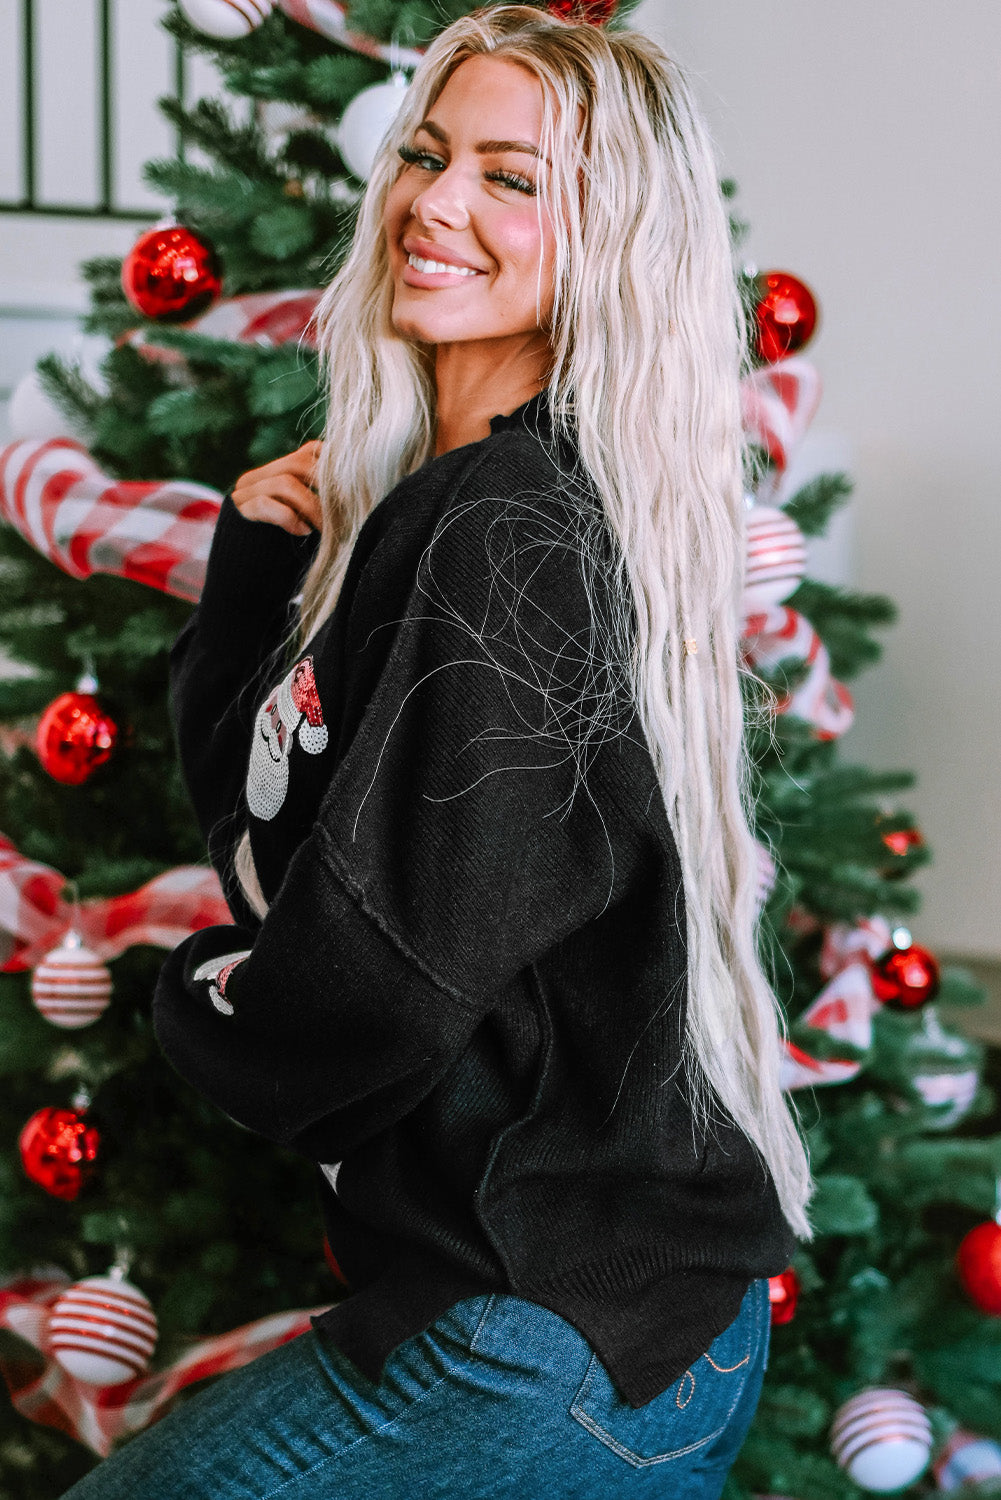 Črn škofovski pulover z bleščicami Božička